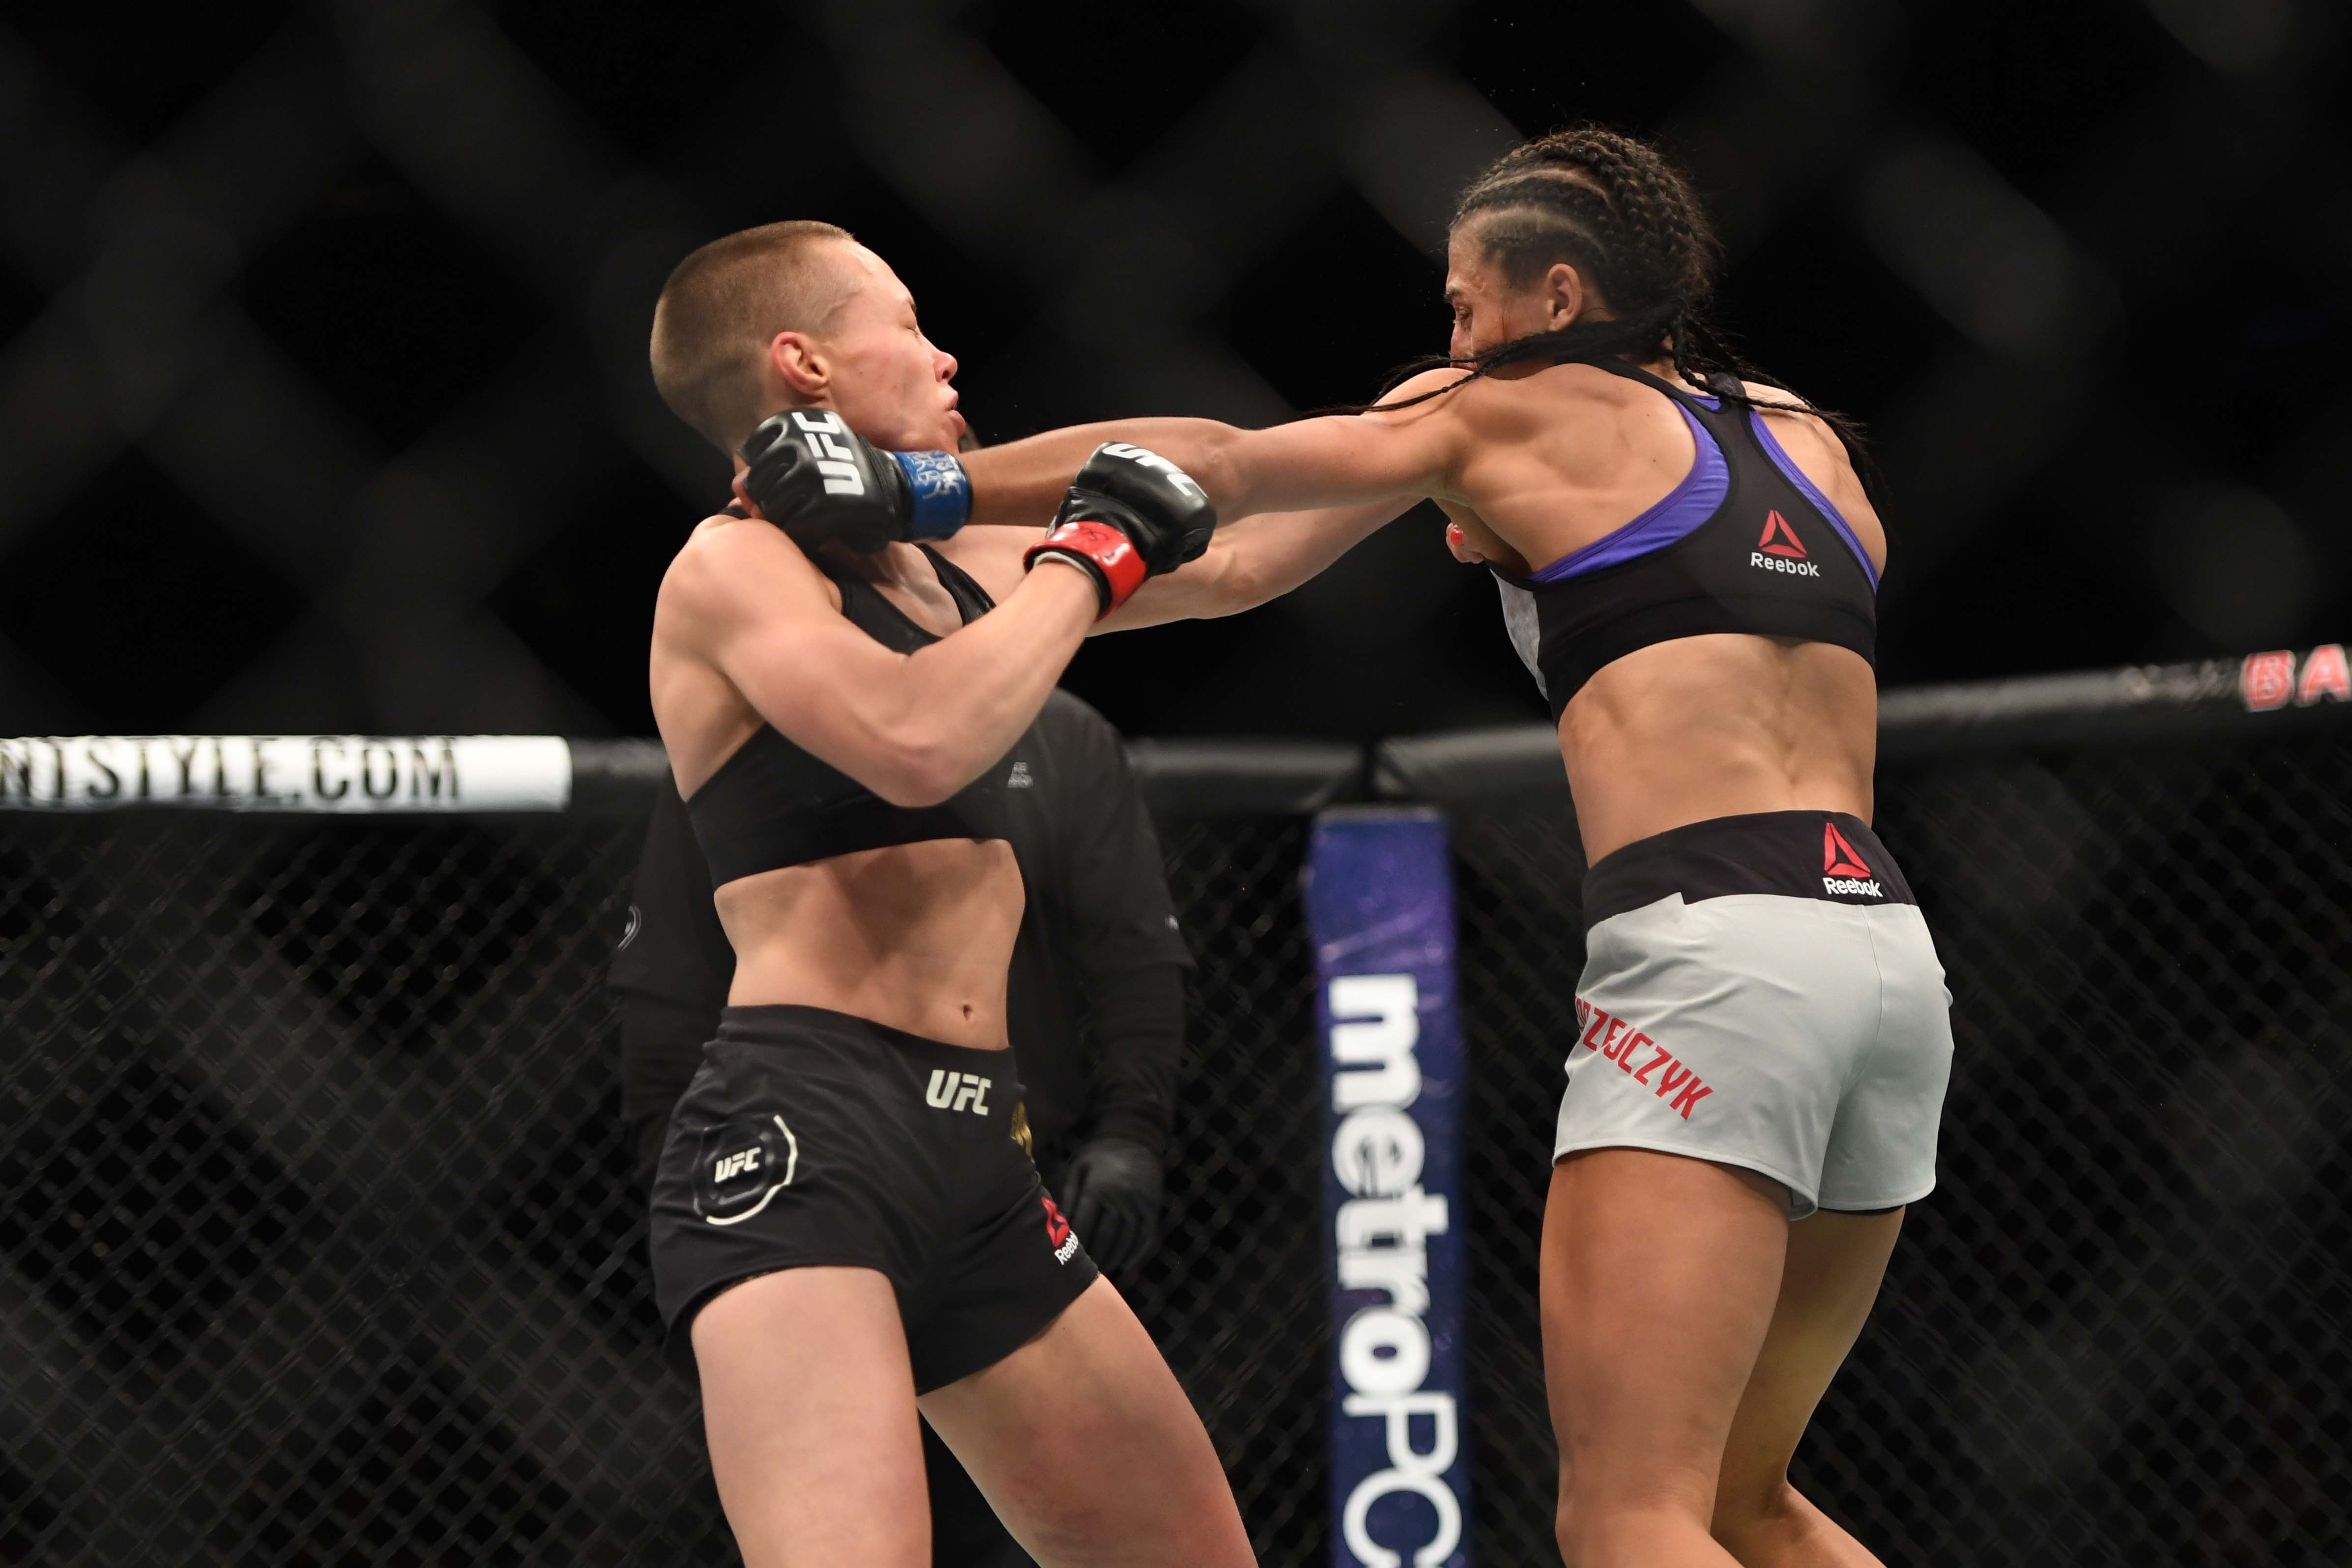 MMA: UFC 223 Rose Namajunas vs Joanna Jedrzezjczyk